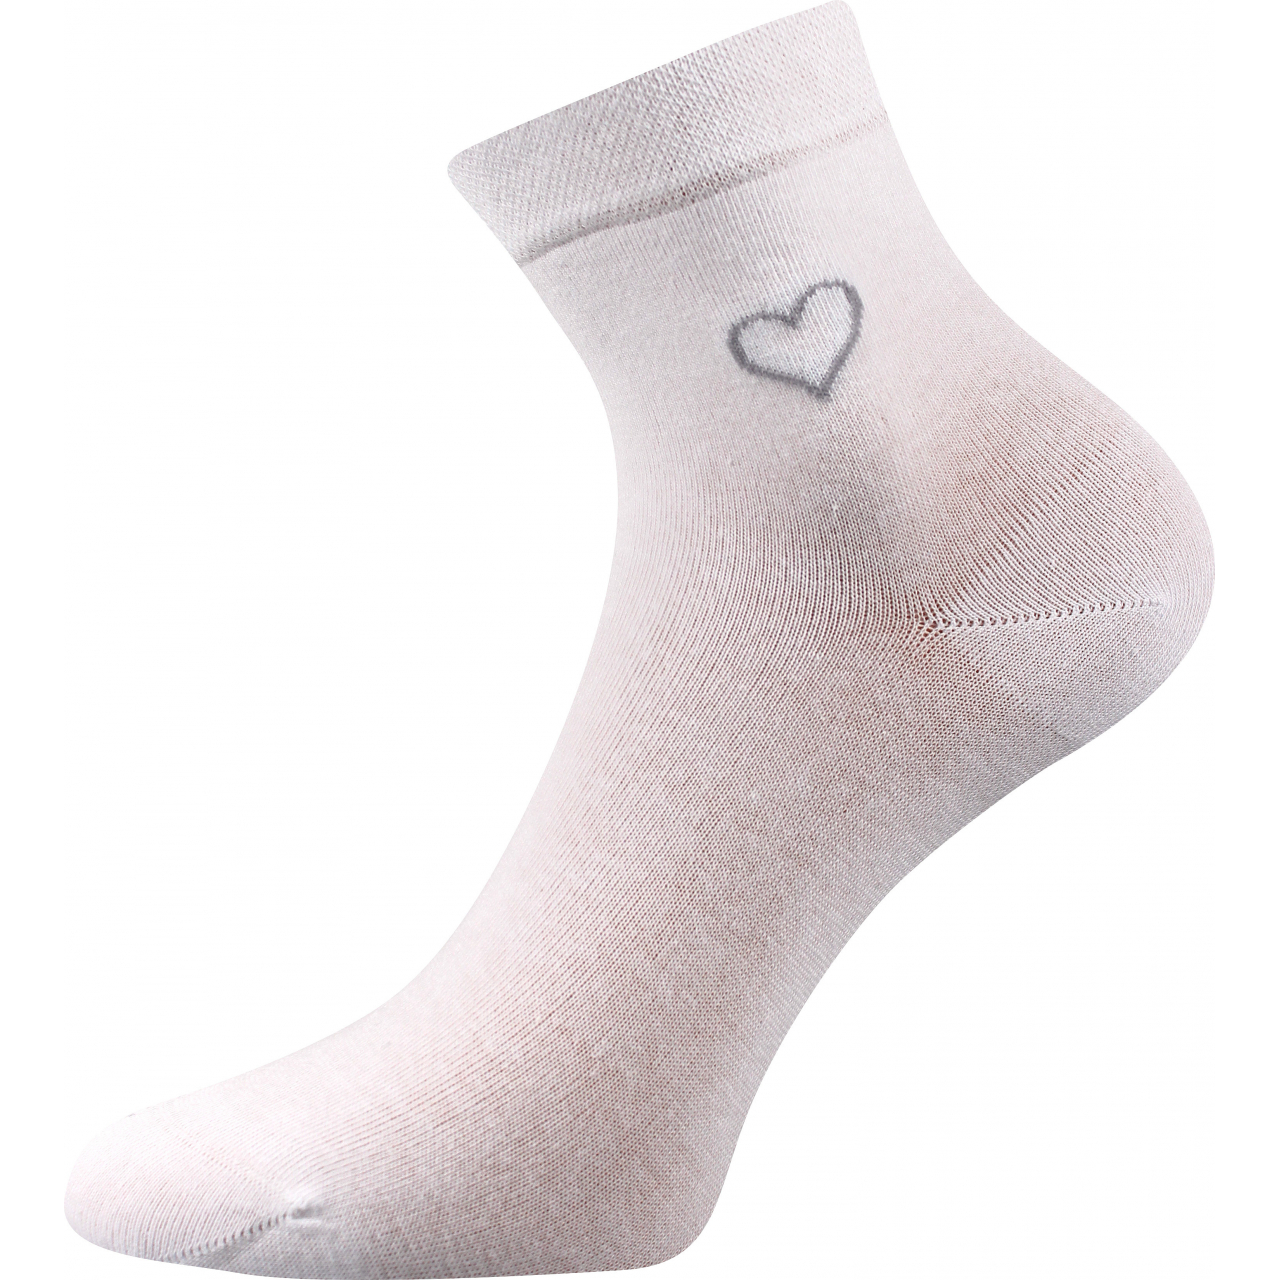 Ponožky elegantní dámské Lonka Filiona - bílé, 35-38